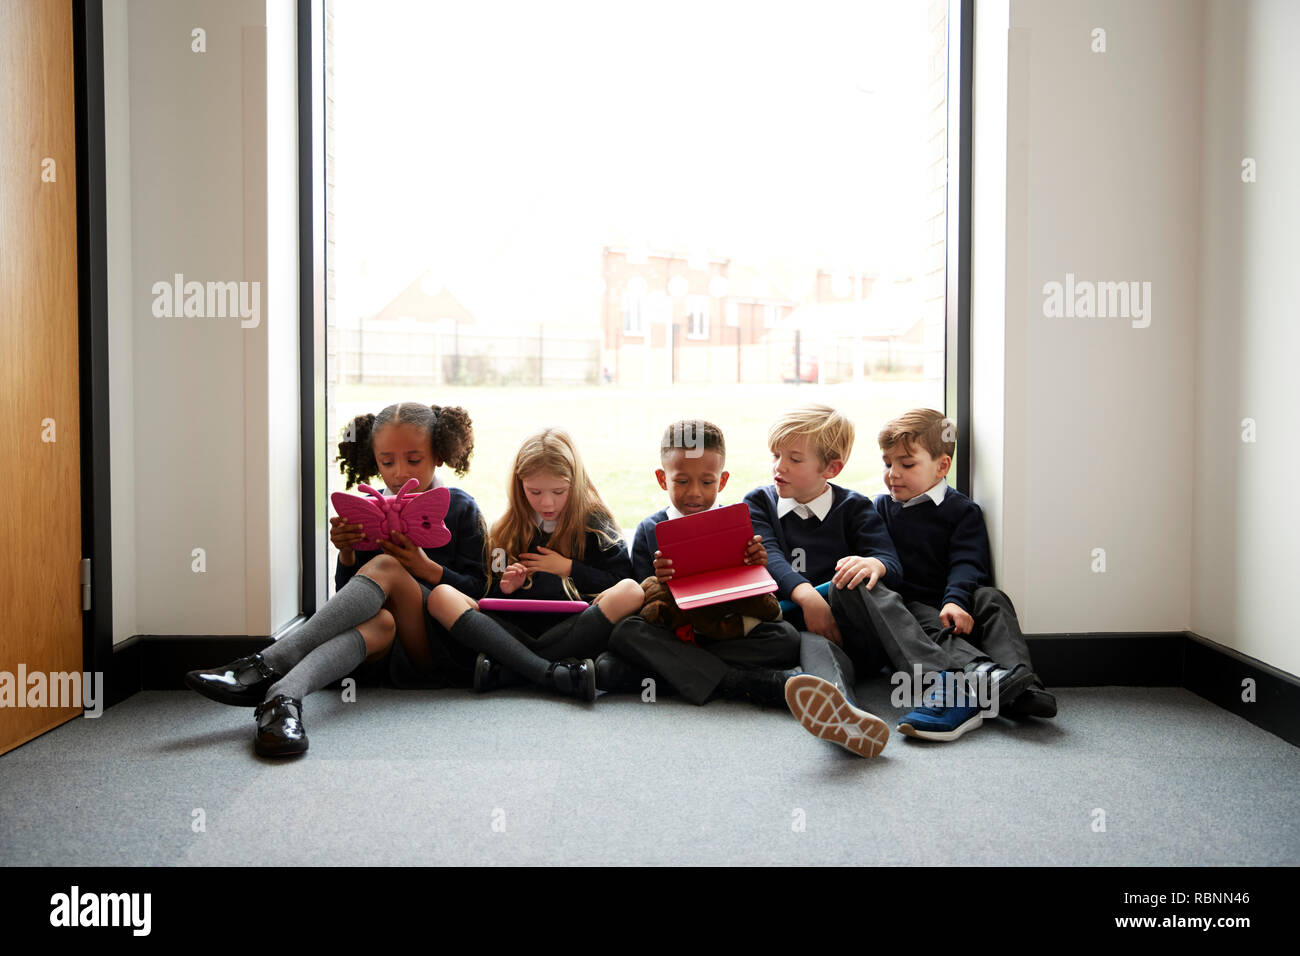 L'école primaire les enfants assis dans une rangée sur le sol en face d'une fenêtre dans un couloir d'école à l'aide d'ordinateurs tablettes, front view Banque D'Images